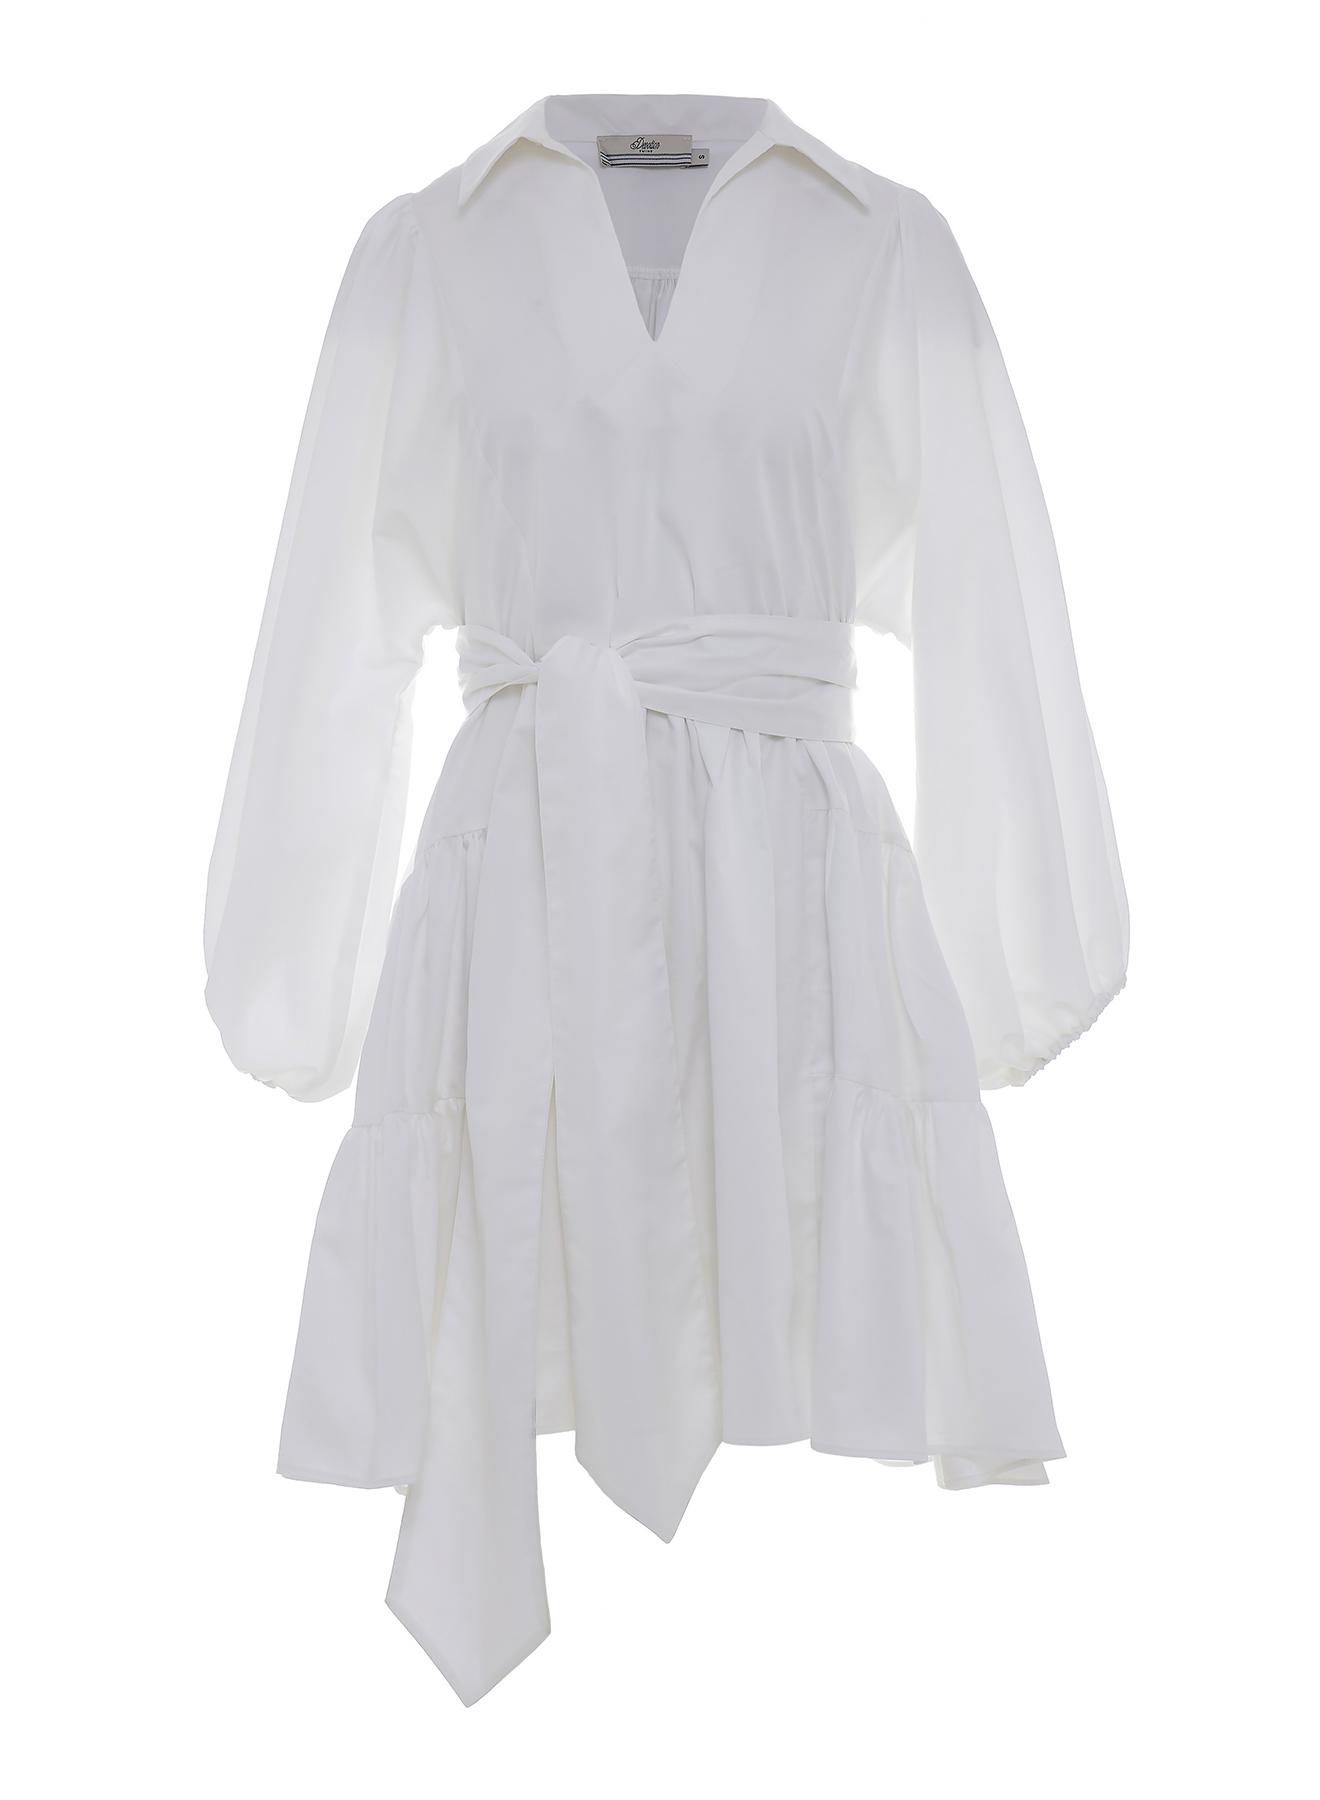 Λευκό κοντό Φόρεμα ποπλίνα με ζώνη "MARLEE" Devotion Twins - 1